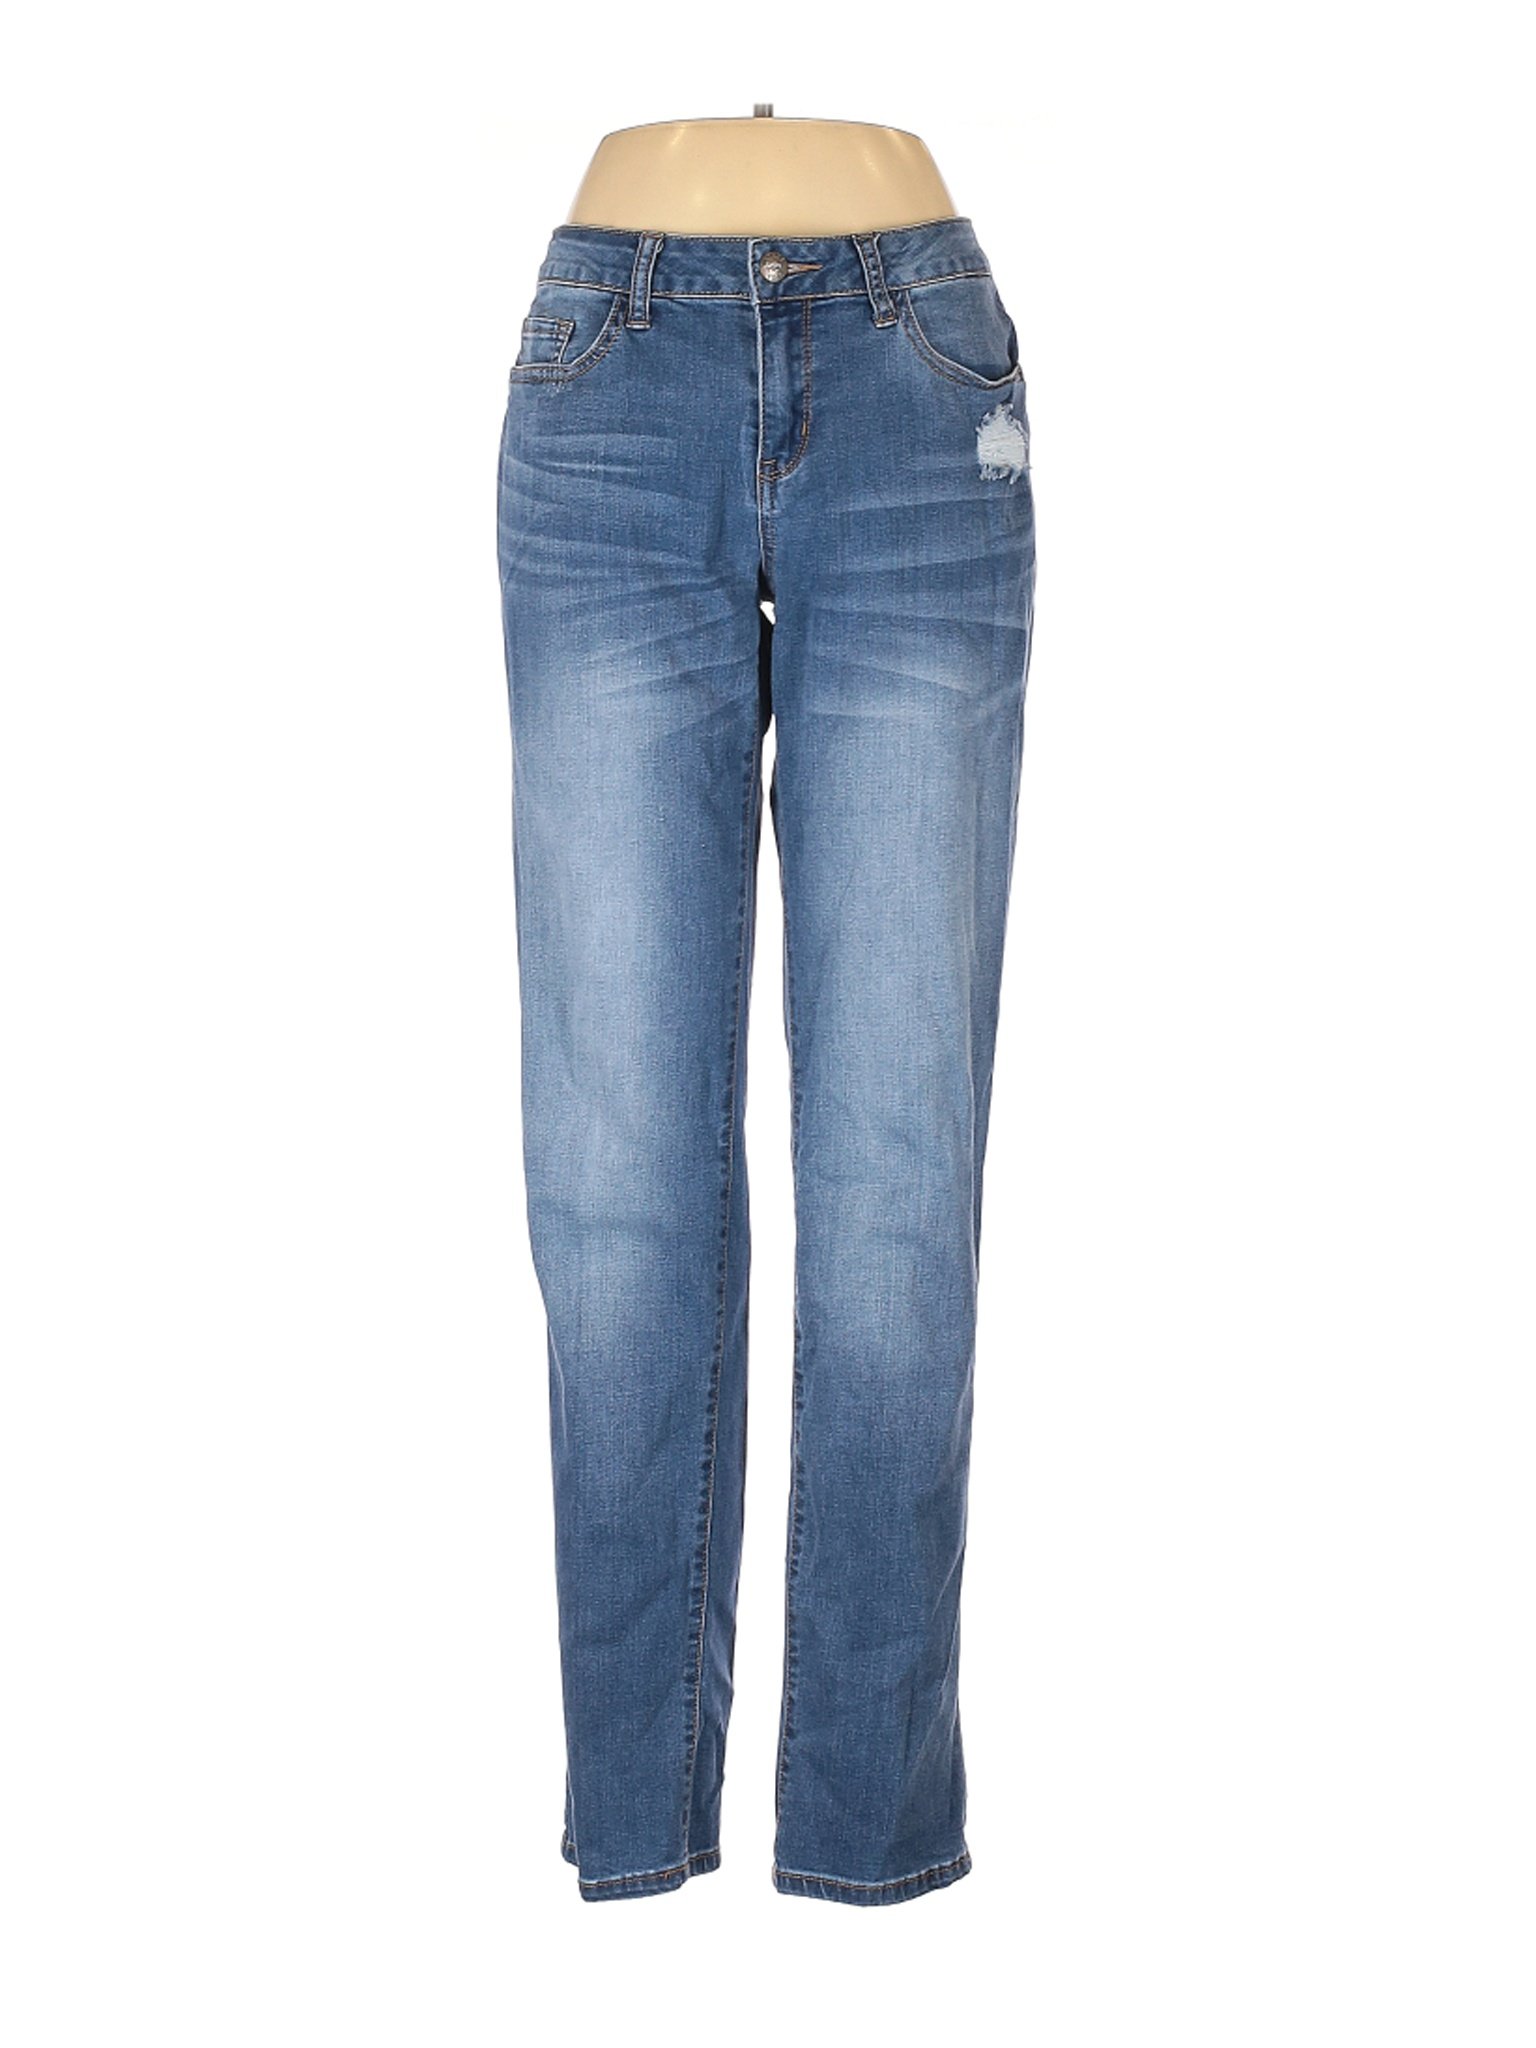 Weatherproof Women Blue Jeans 6 | eBay